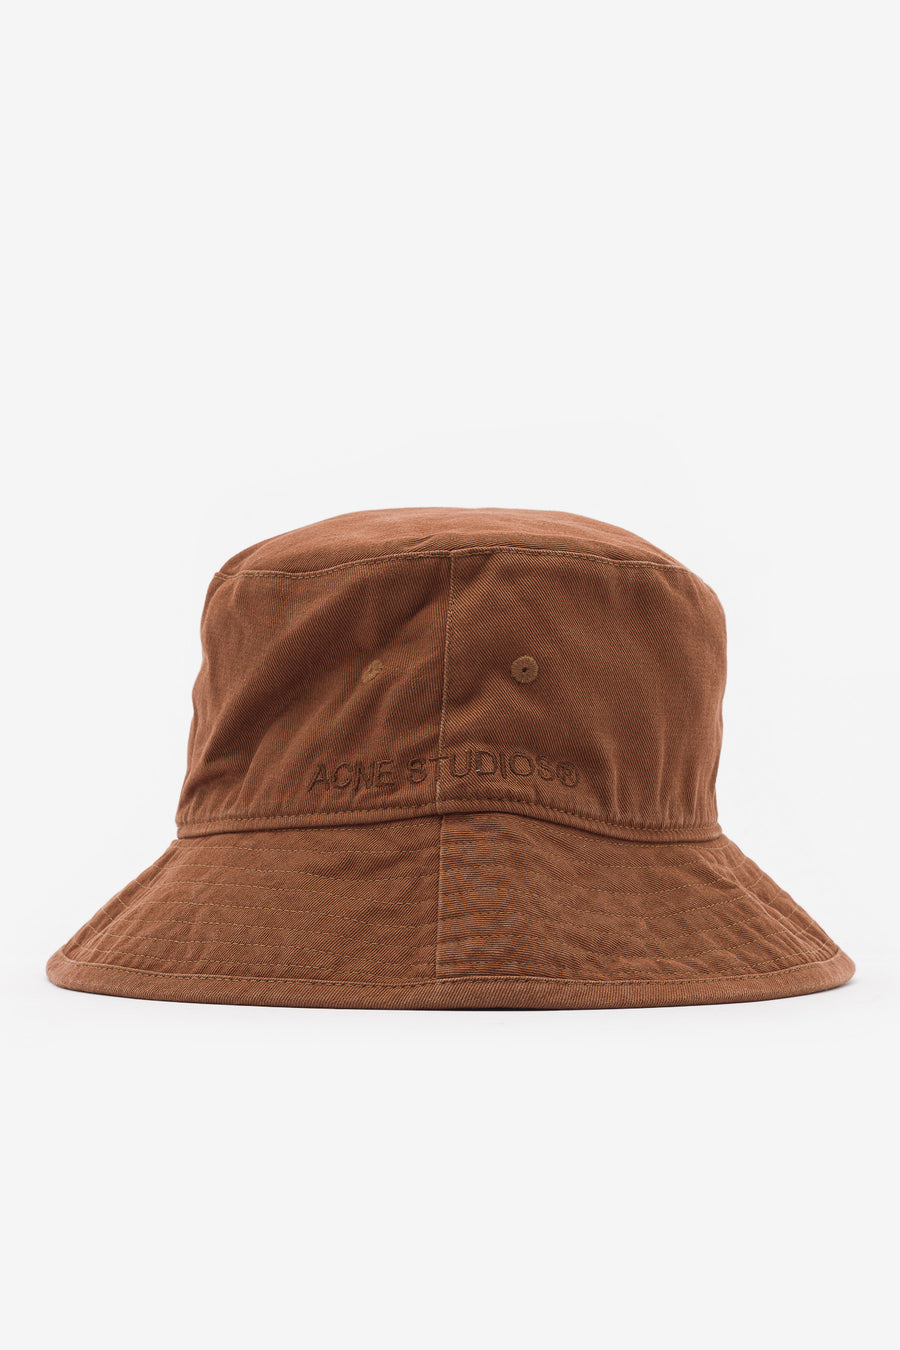 Acne Studios - Bucket Hat in Brown